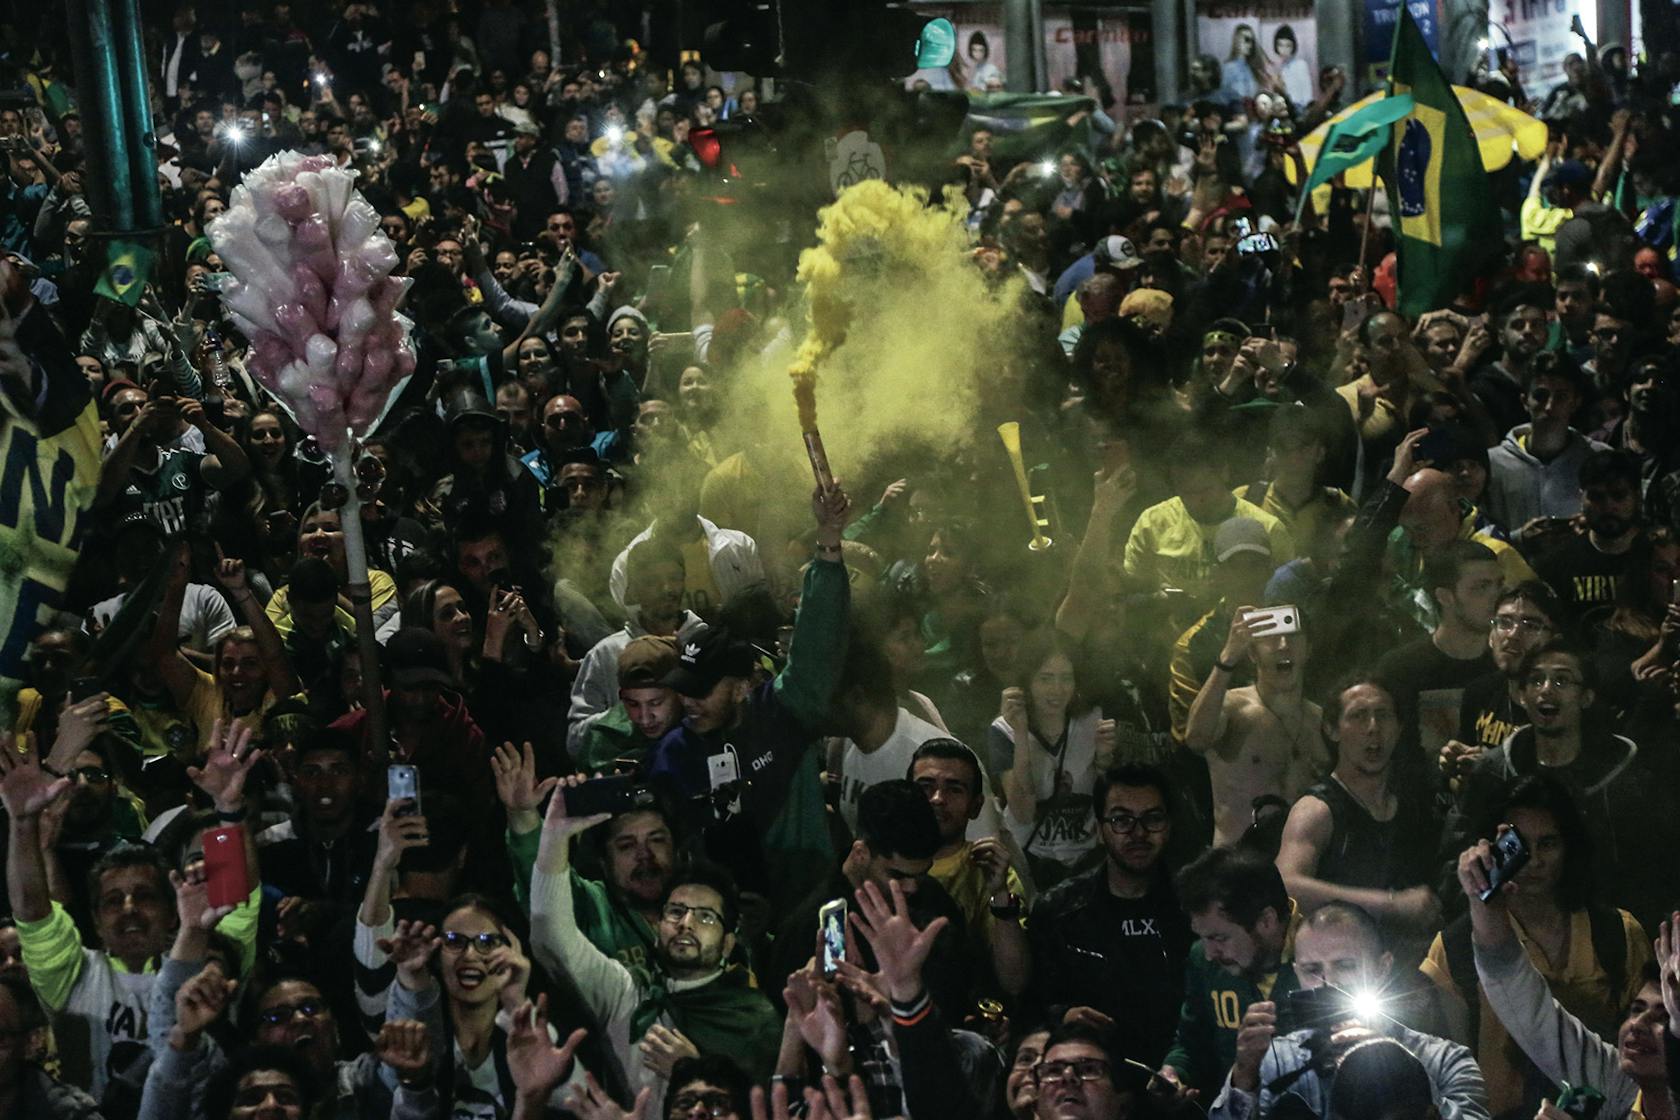 Aanhangers vieren de overwinning van Bolsonaro in de straten van Sao Paolo